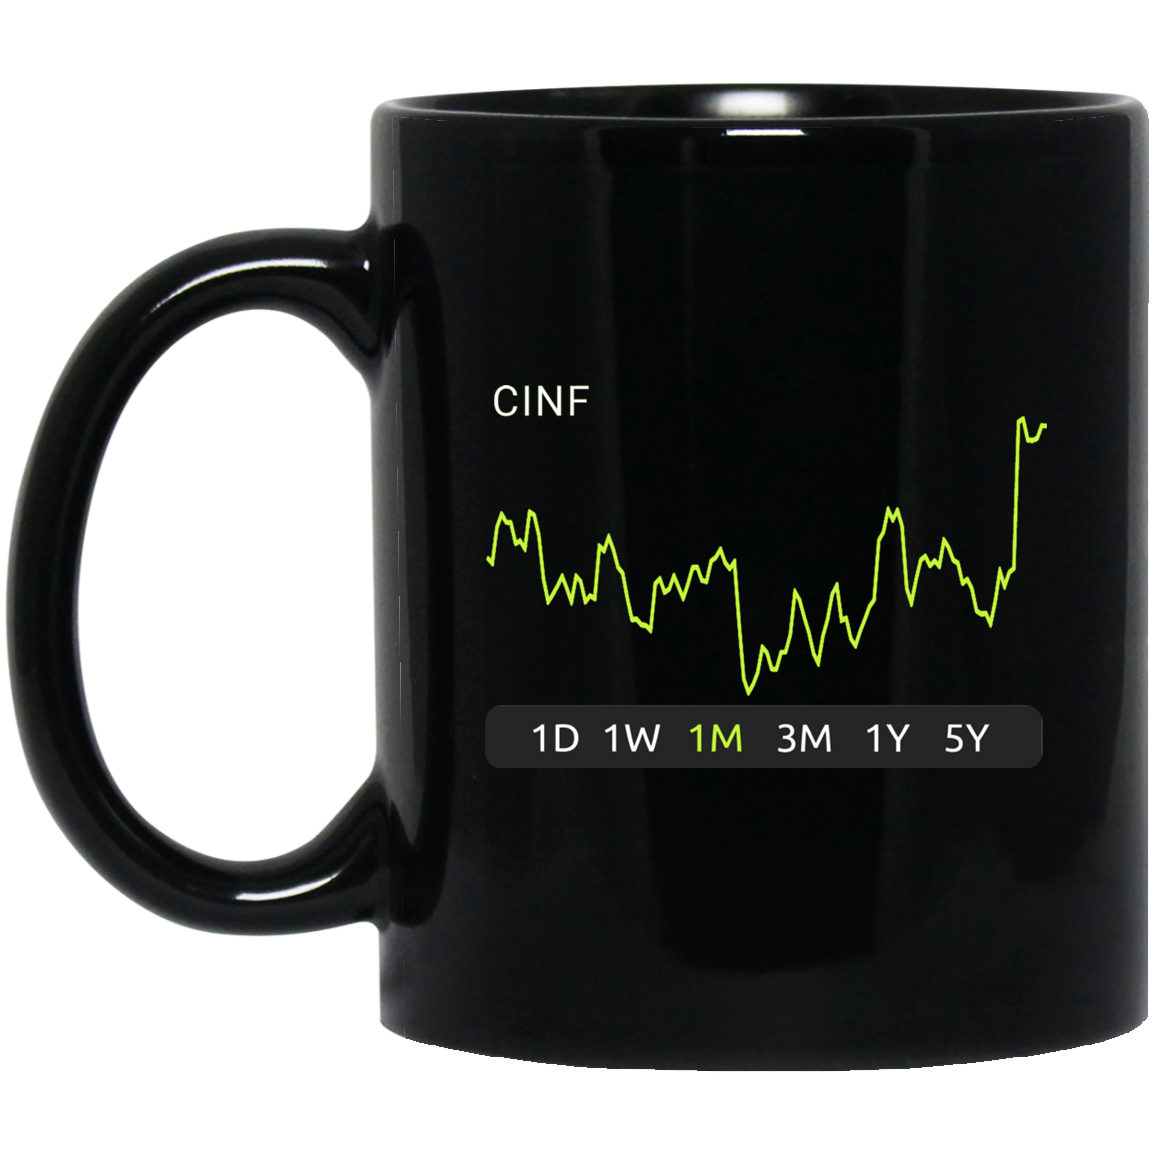 CINF O Stock 1m Mug